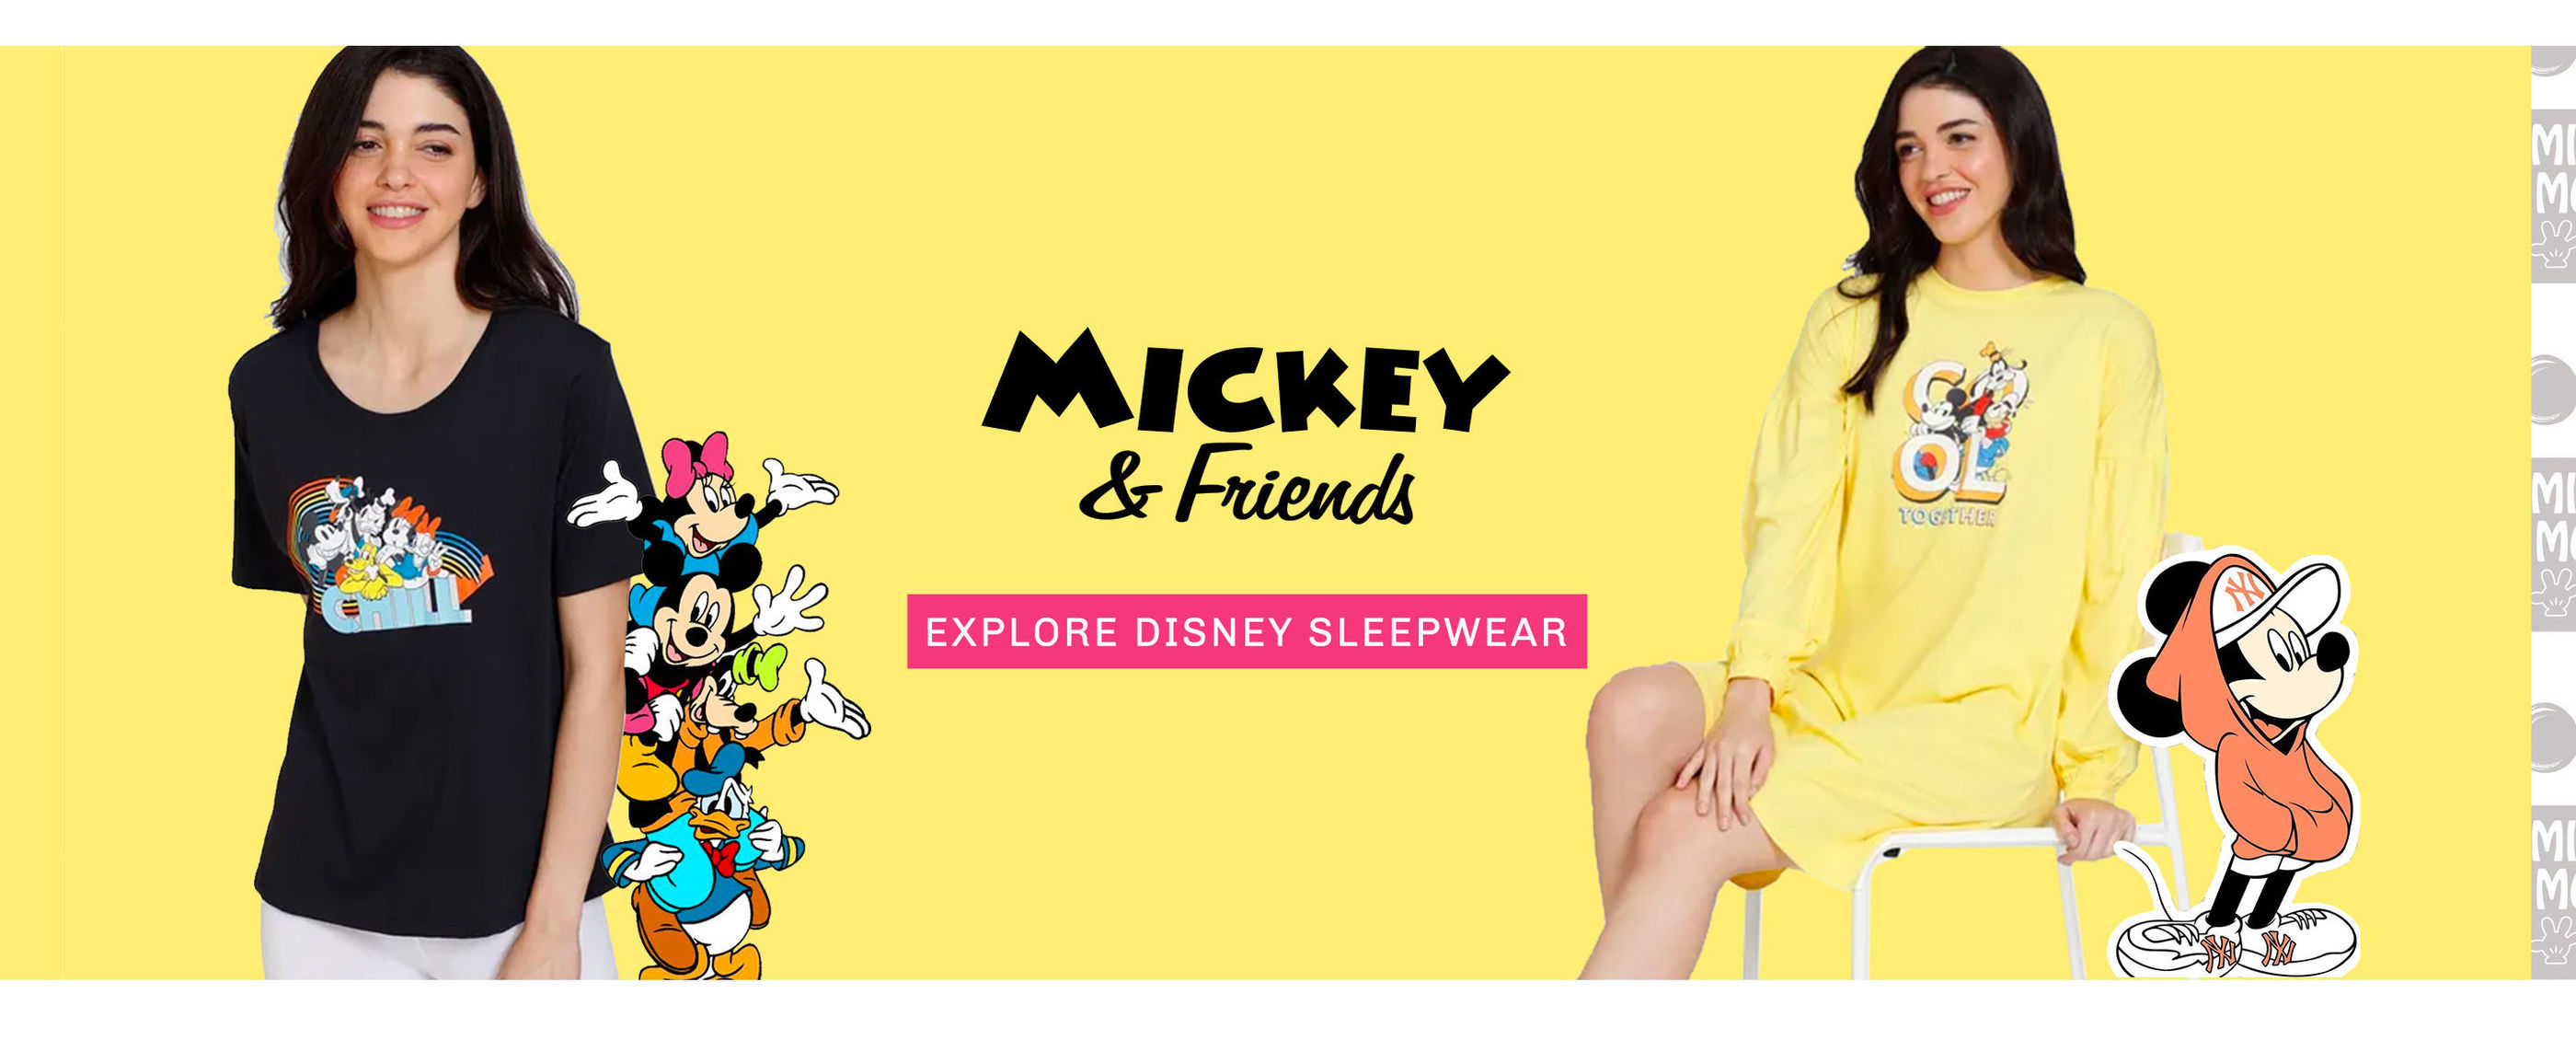 Lingerie Fest - Sleepwear Mickey Coll